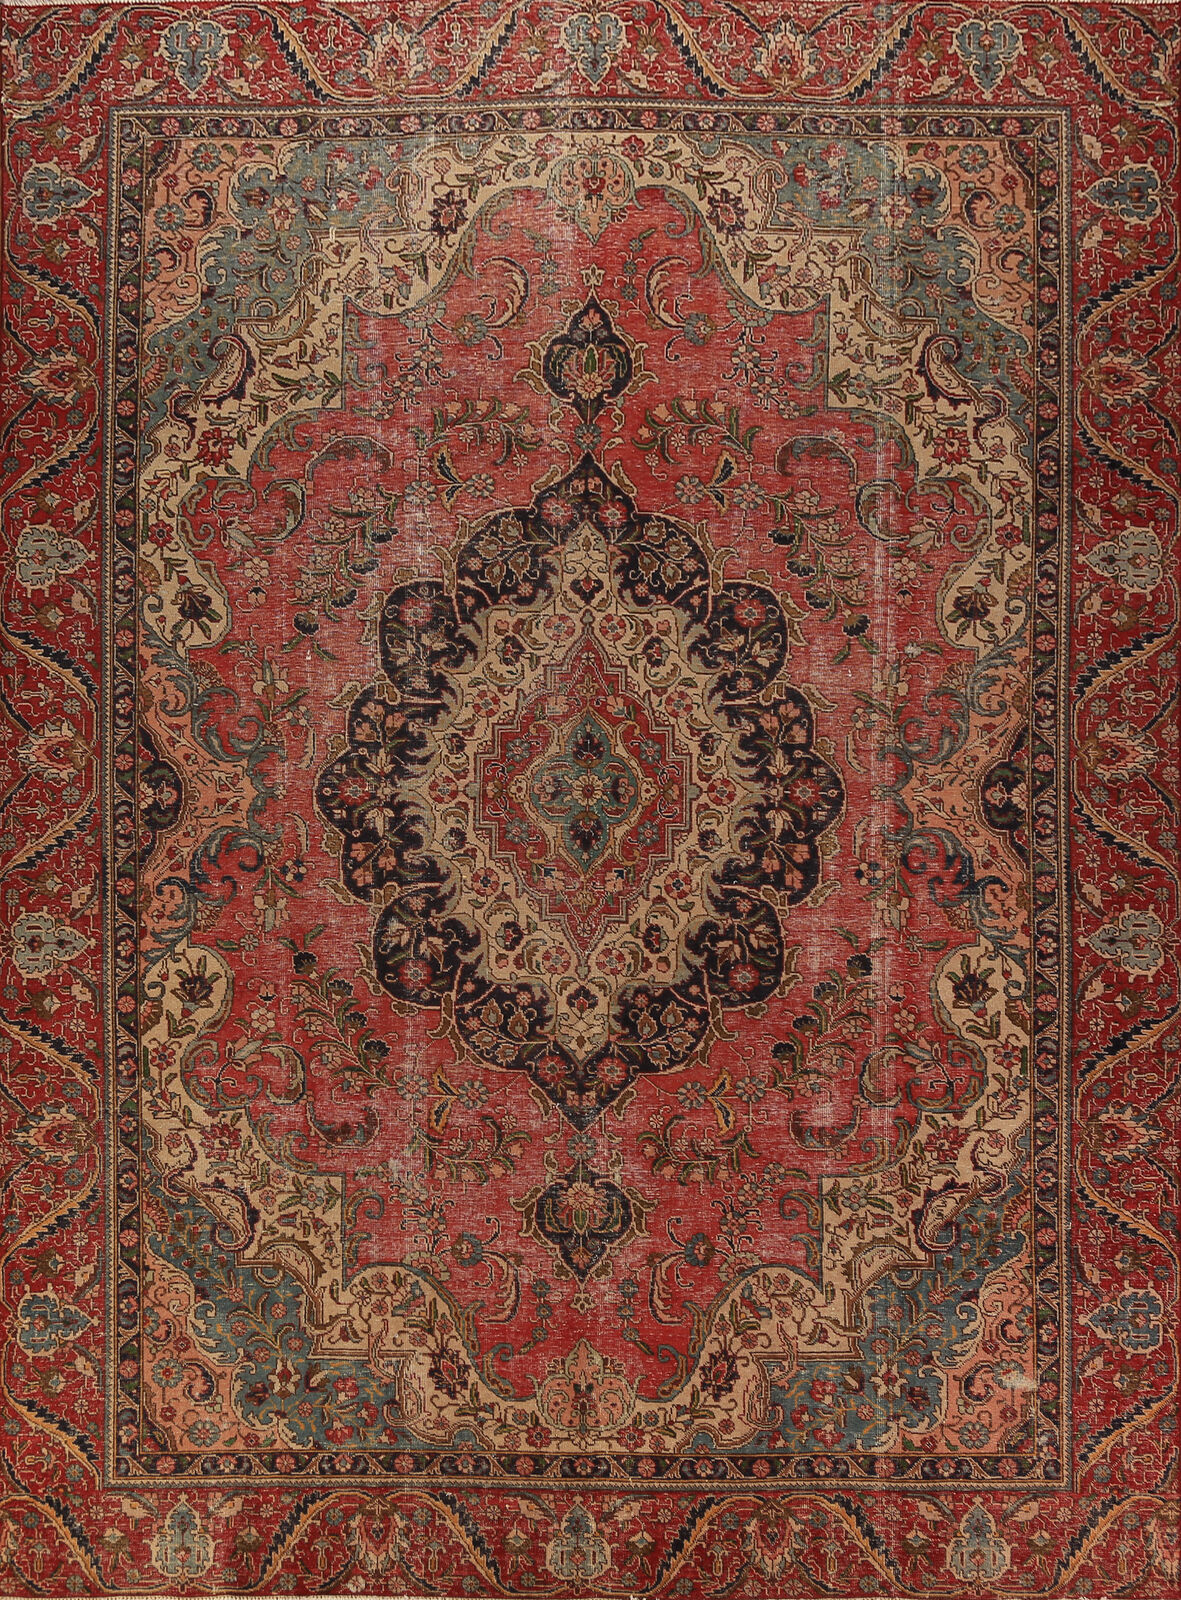 Vintage Red Wool Medallion Tebriz  Area Rug 9x13 Living Room Hand-knotted Carpet